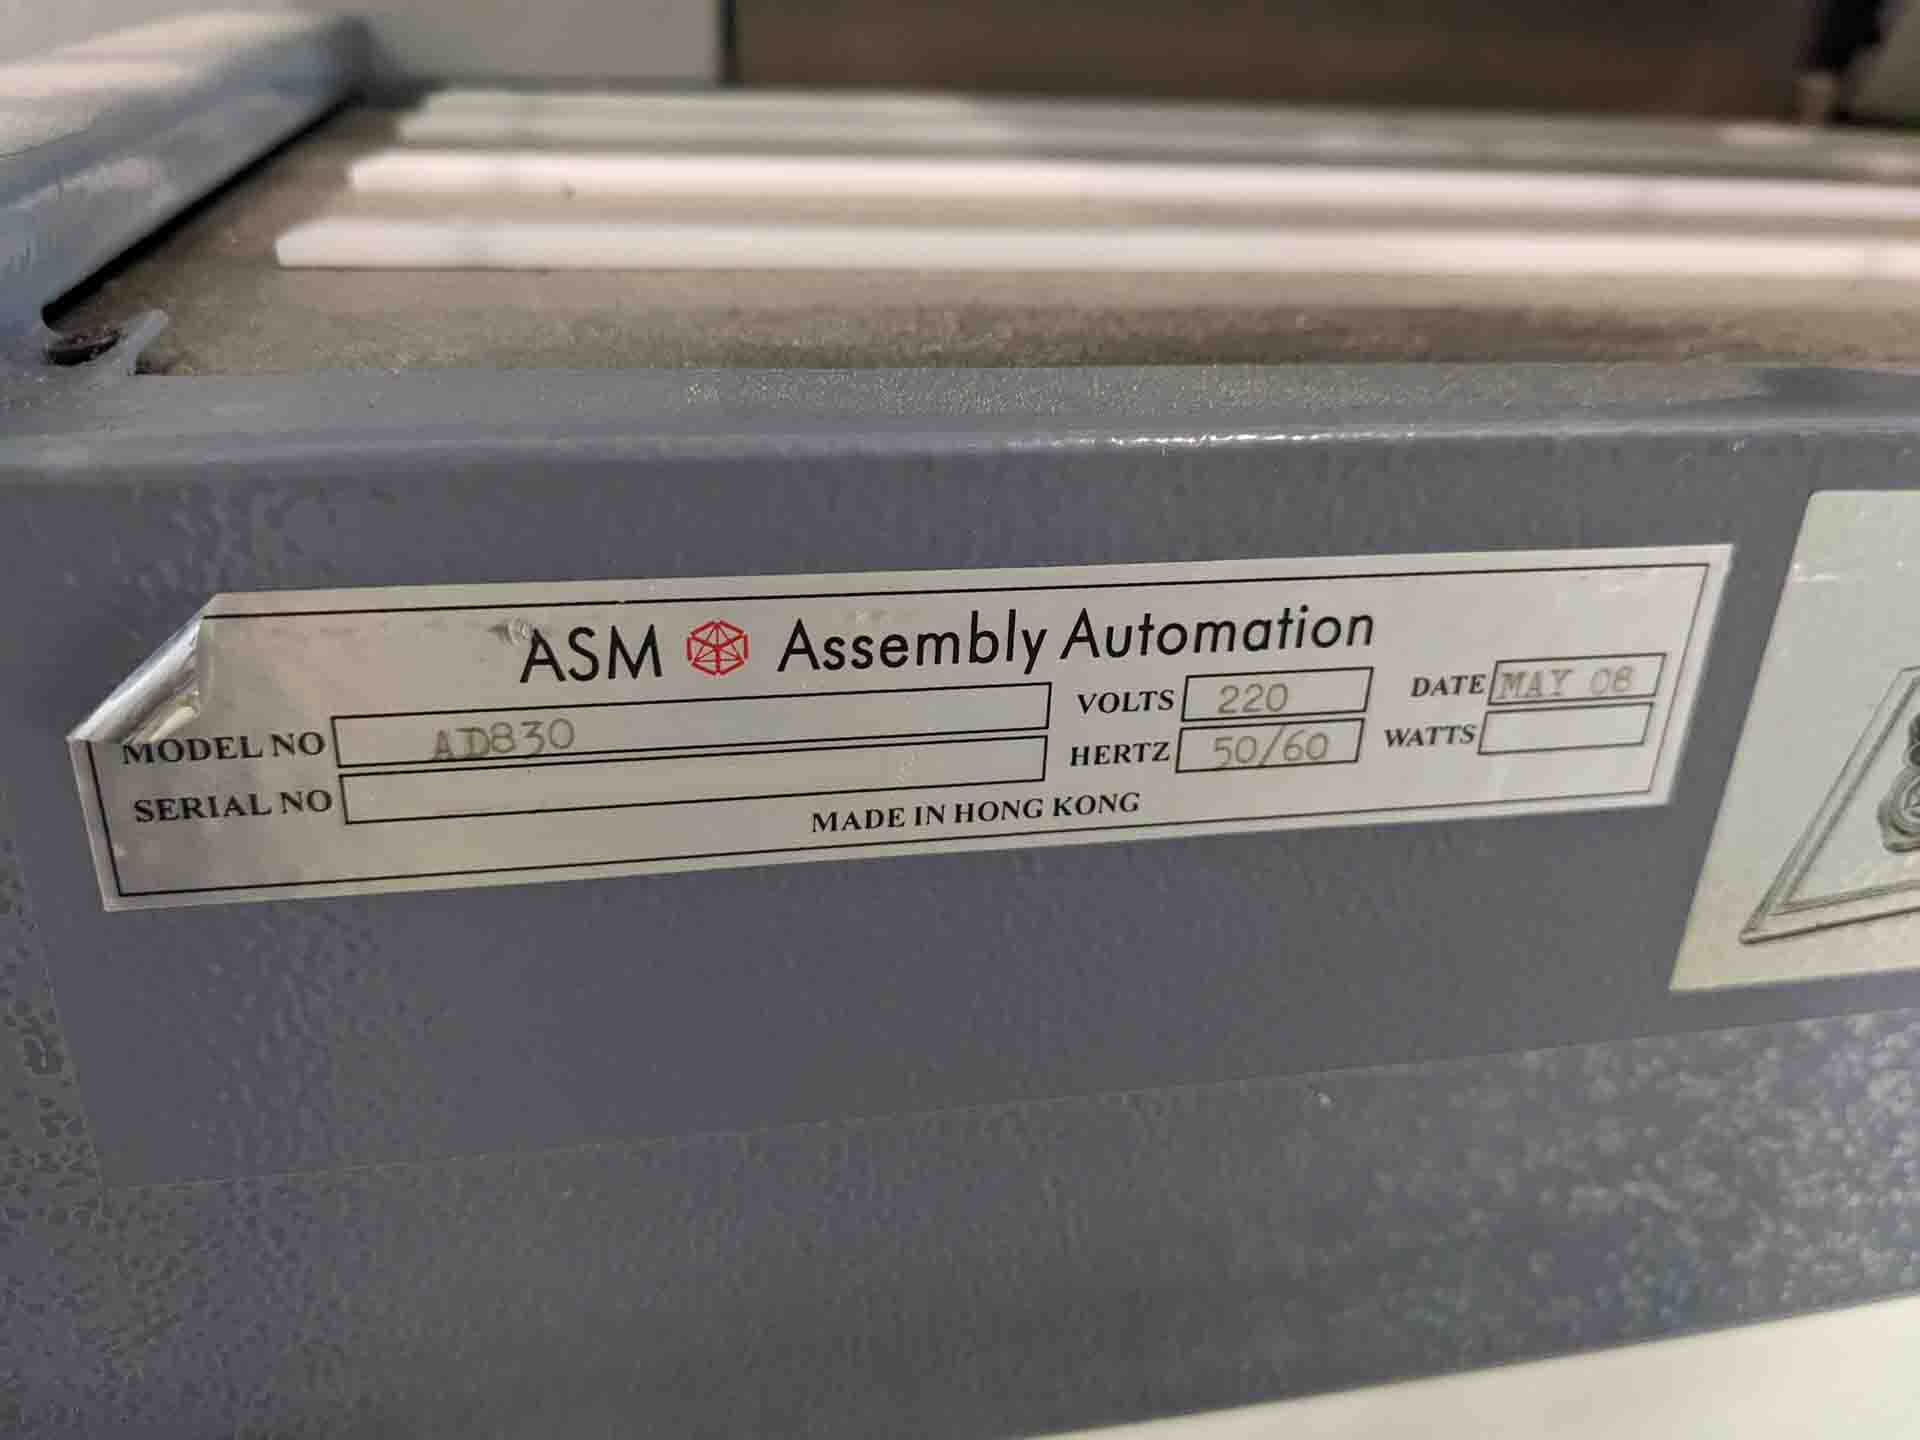 圖為 已使用的 ASM AD 830 待售